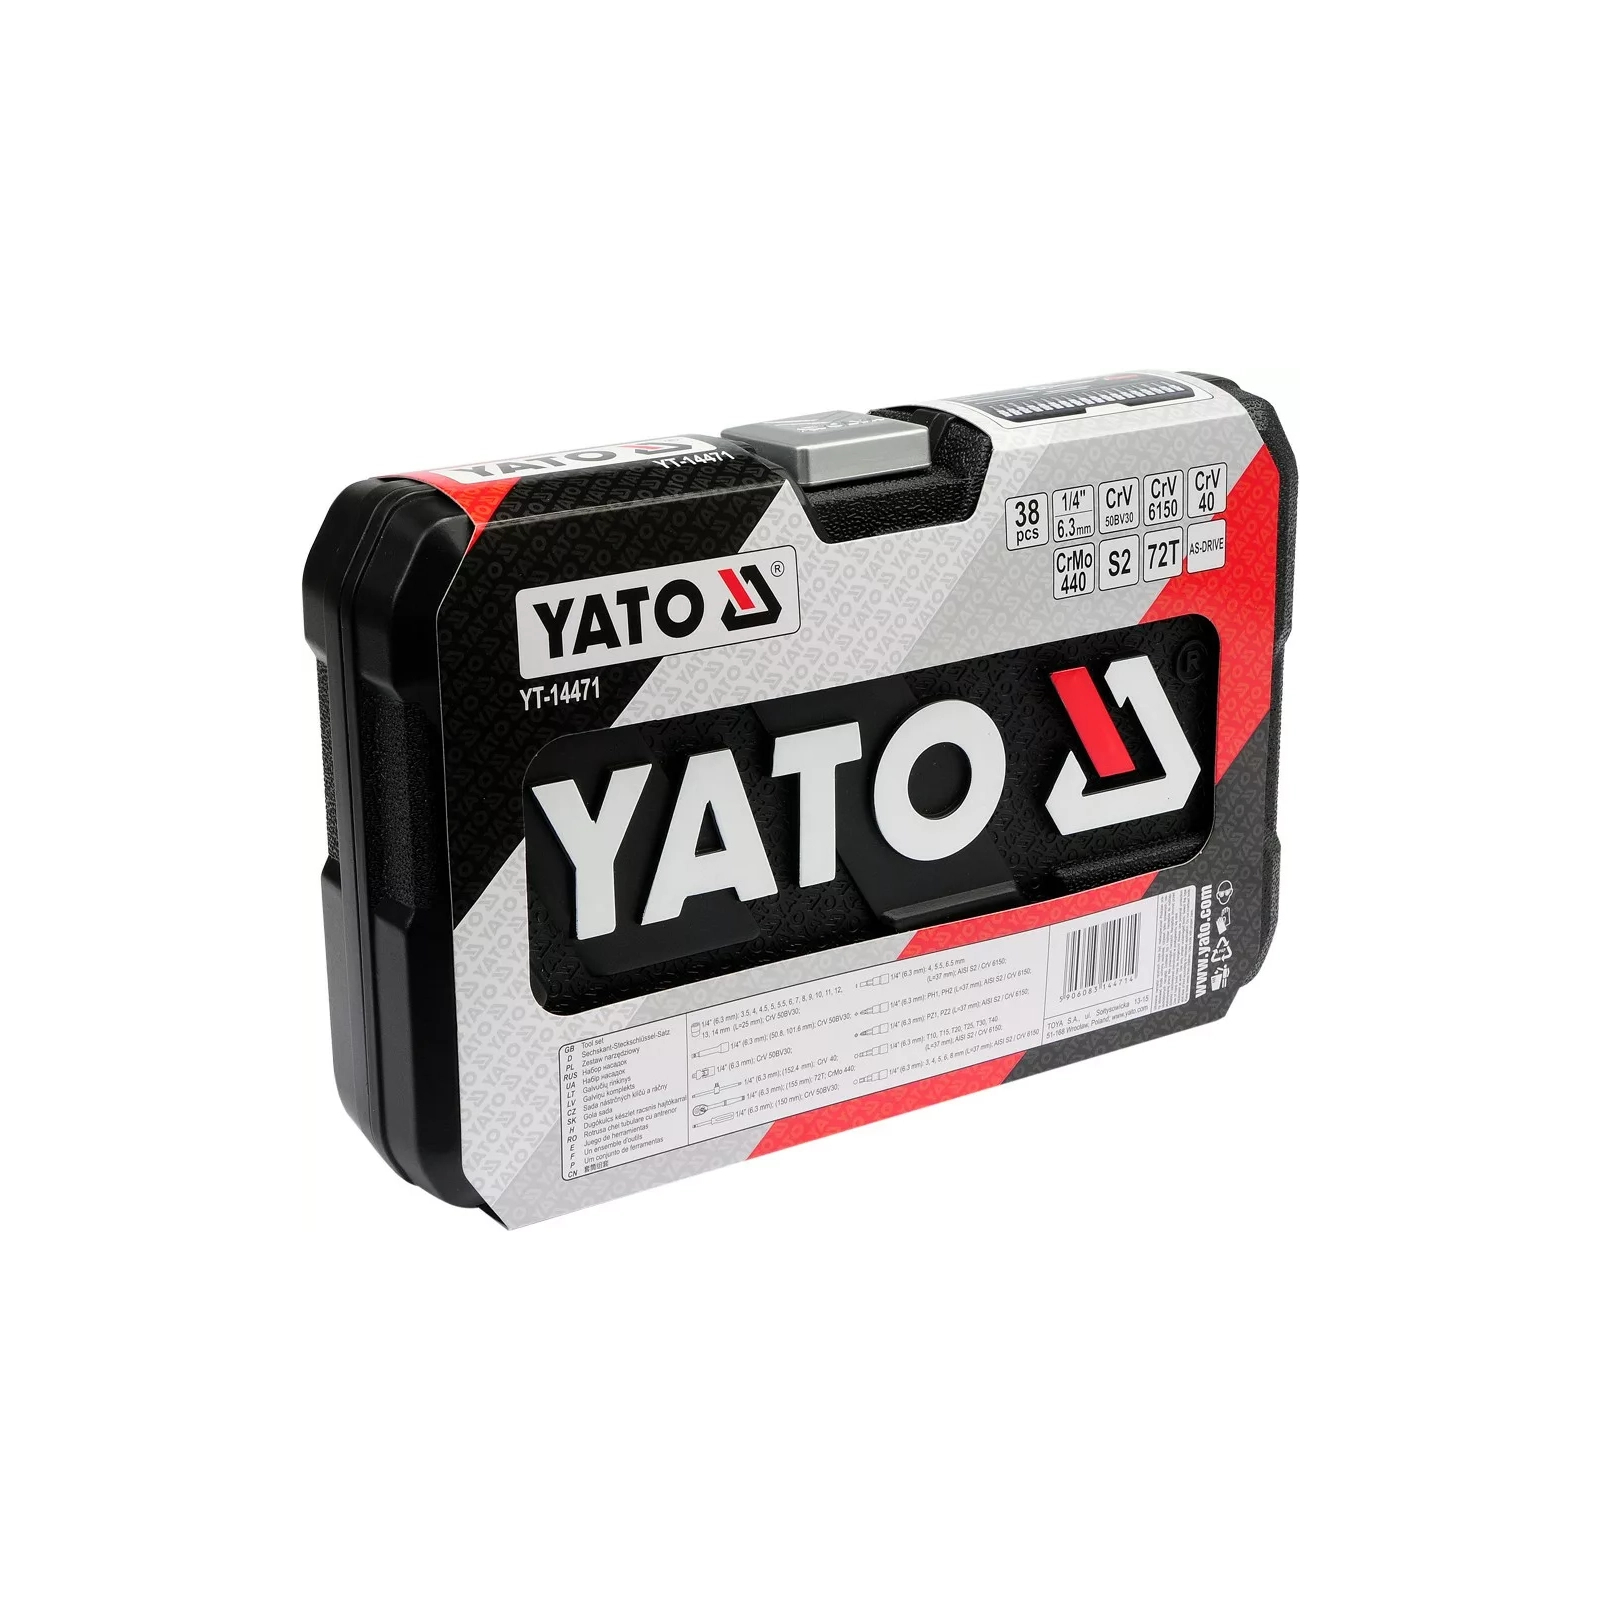 Набор инструментов Yato YT-14471 изображение 4